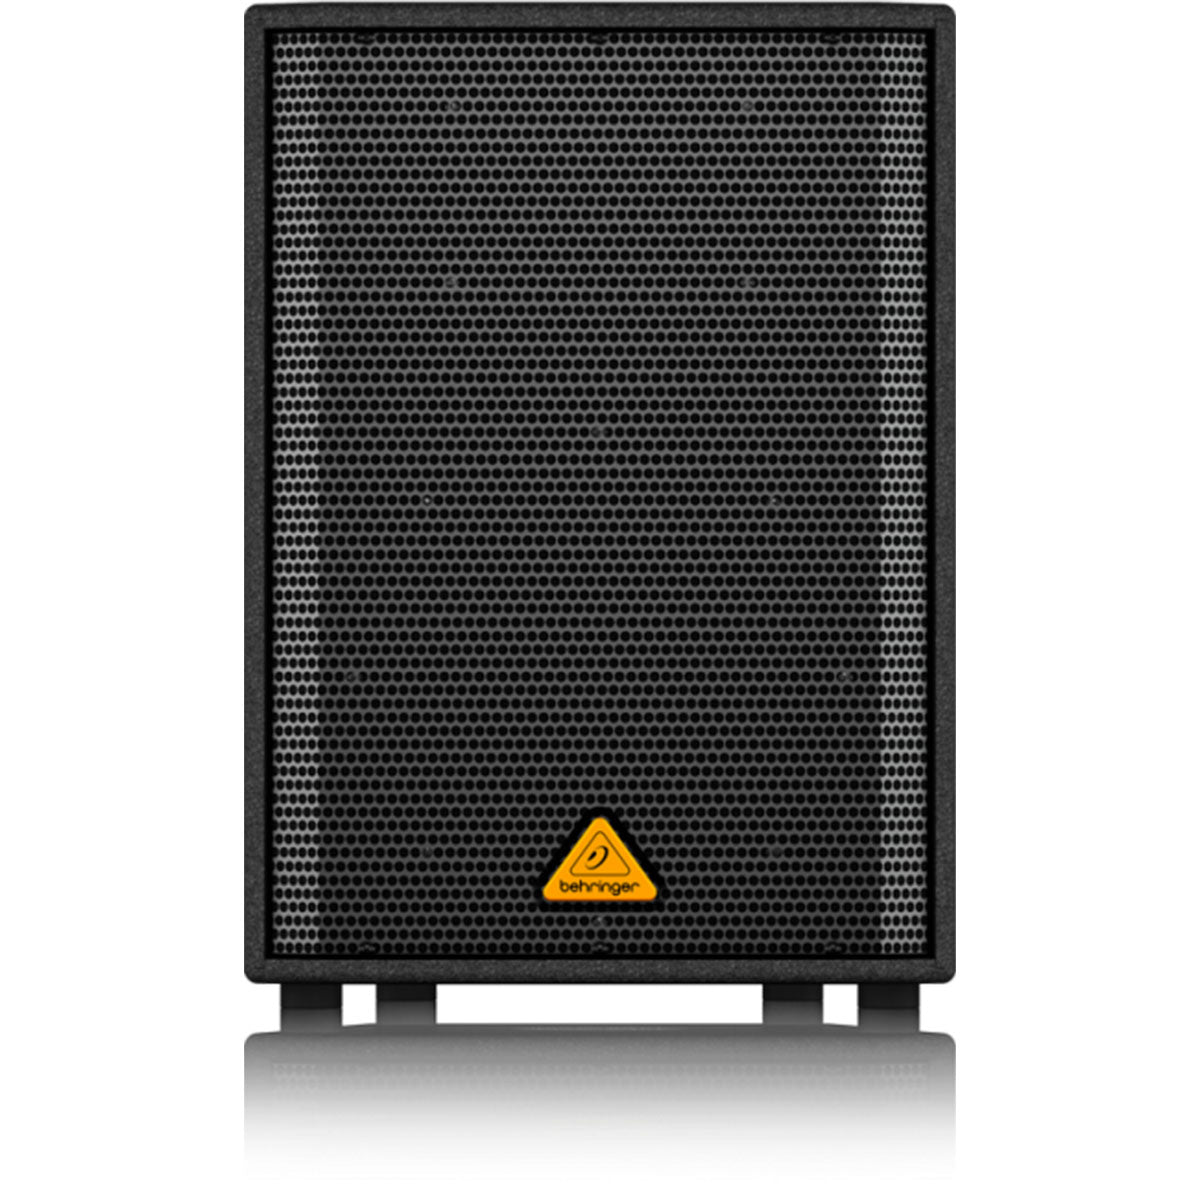 Behringer Eurolive VS1220 Passive Speaker - OPEN BOX